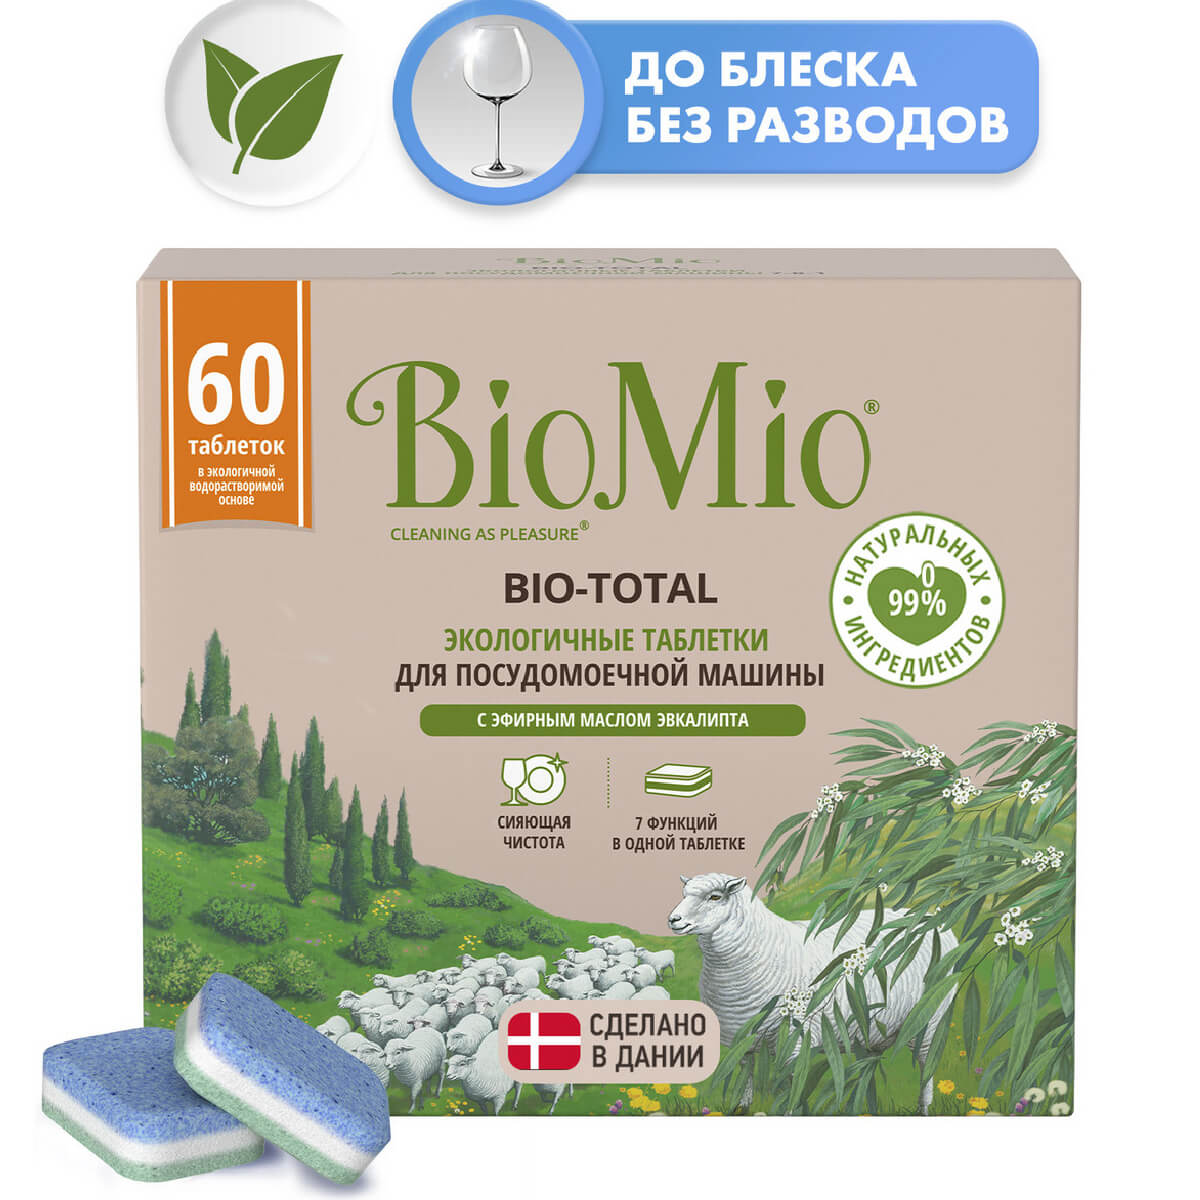 Экологичные таблетки для посудомоечных машин 7 в 1 с эфирным маслом эвкалипта, 60 шт, BioMio